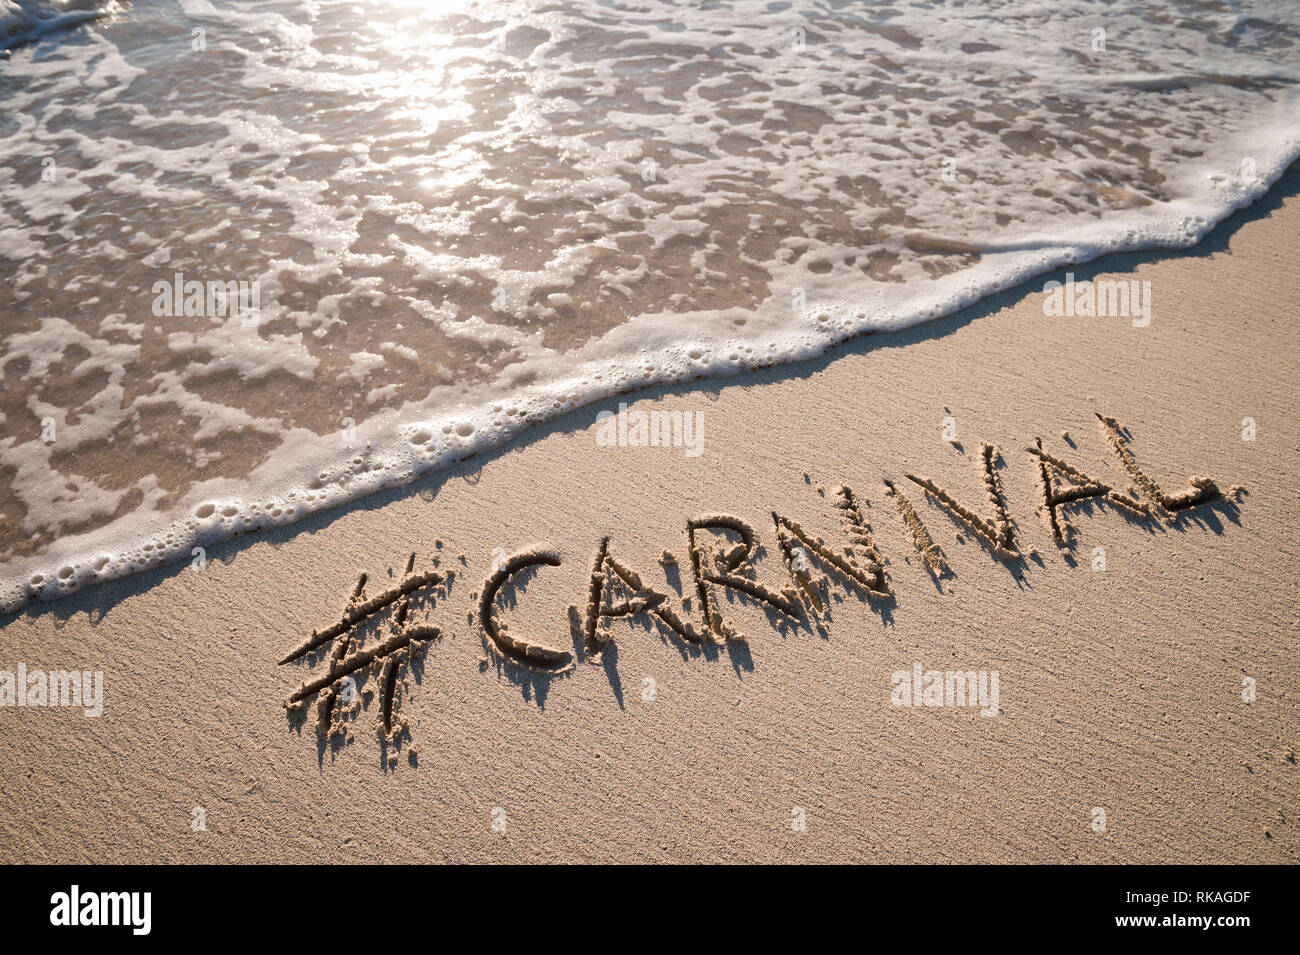 Moderne Nachricht für Karneval mit einem Social Media - freundliche Hashtag auf glatten Sandstrand geschrieben Stockfoto